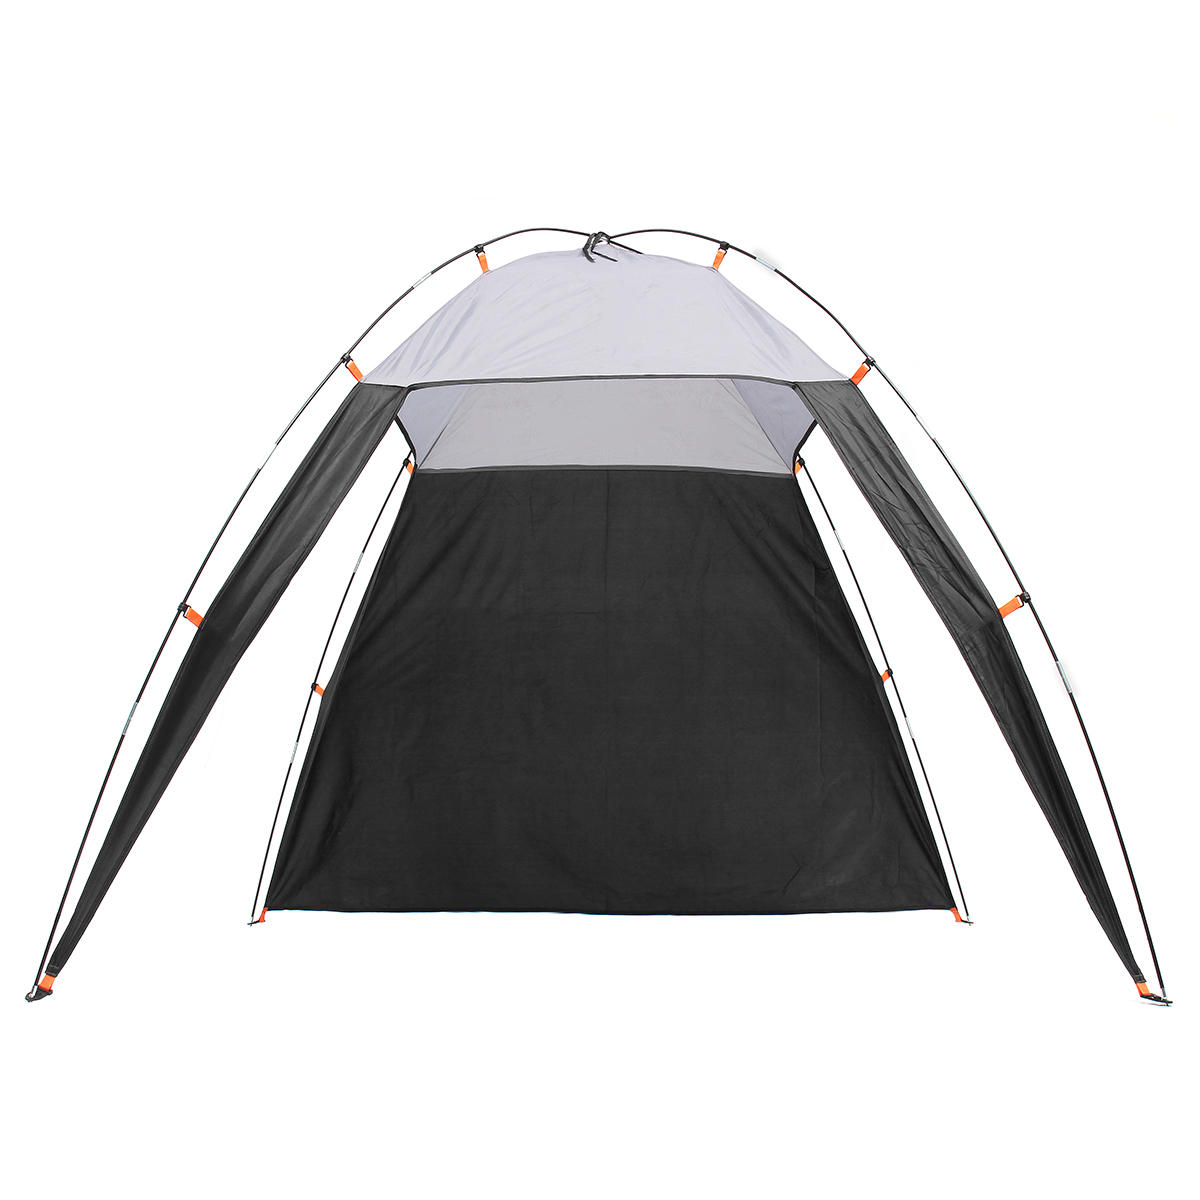 

5-8 человек На открытом воздухе Пляжный Триангулярная палатка Водонепроницаемы Приют для тени навеса Кемпинг Пеший туриз